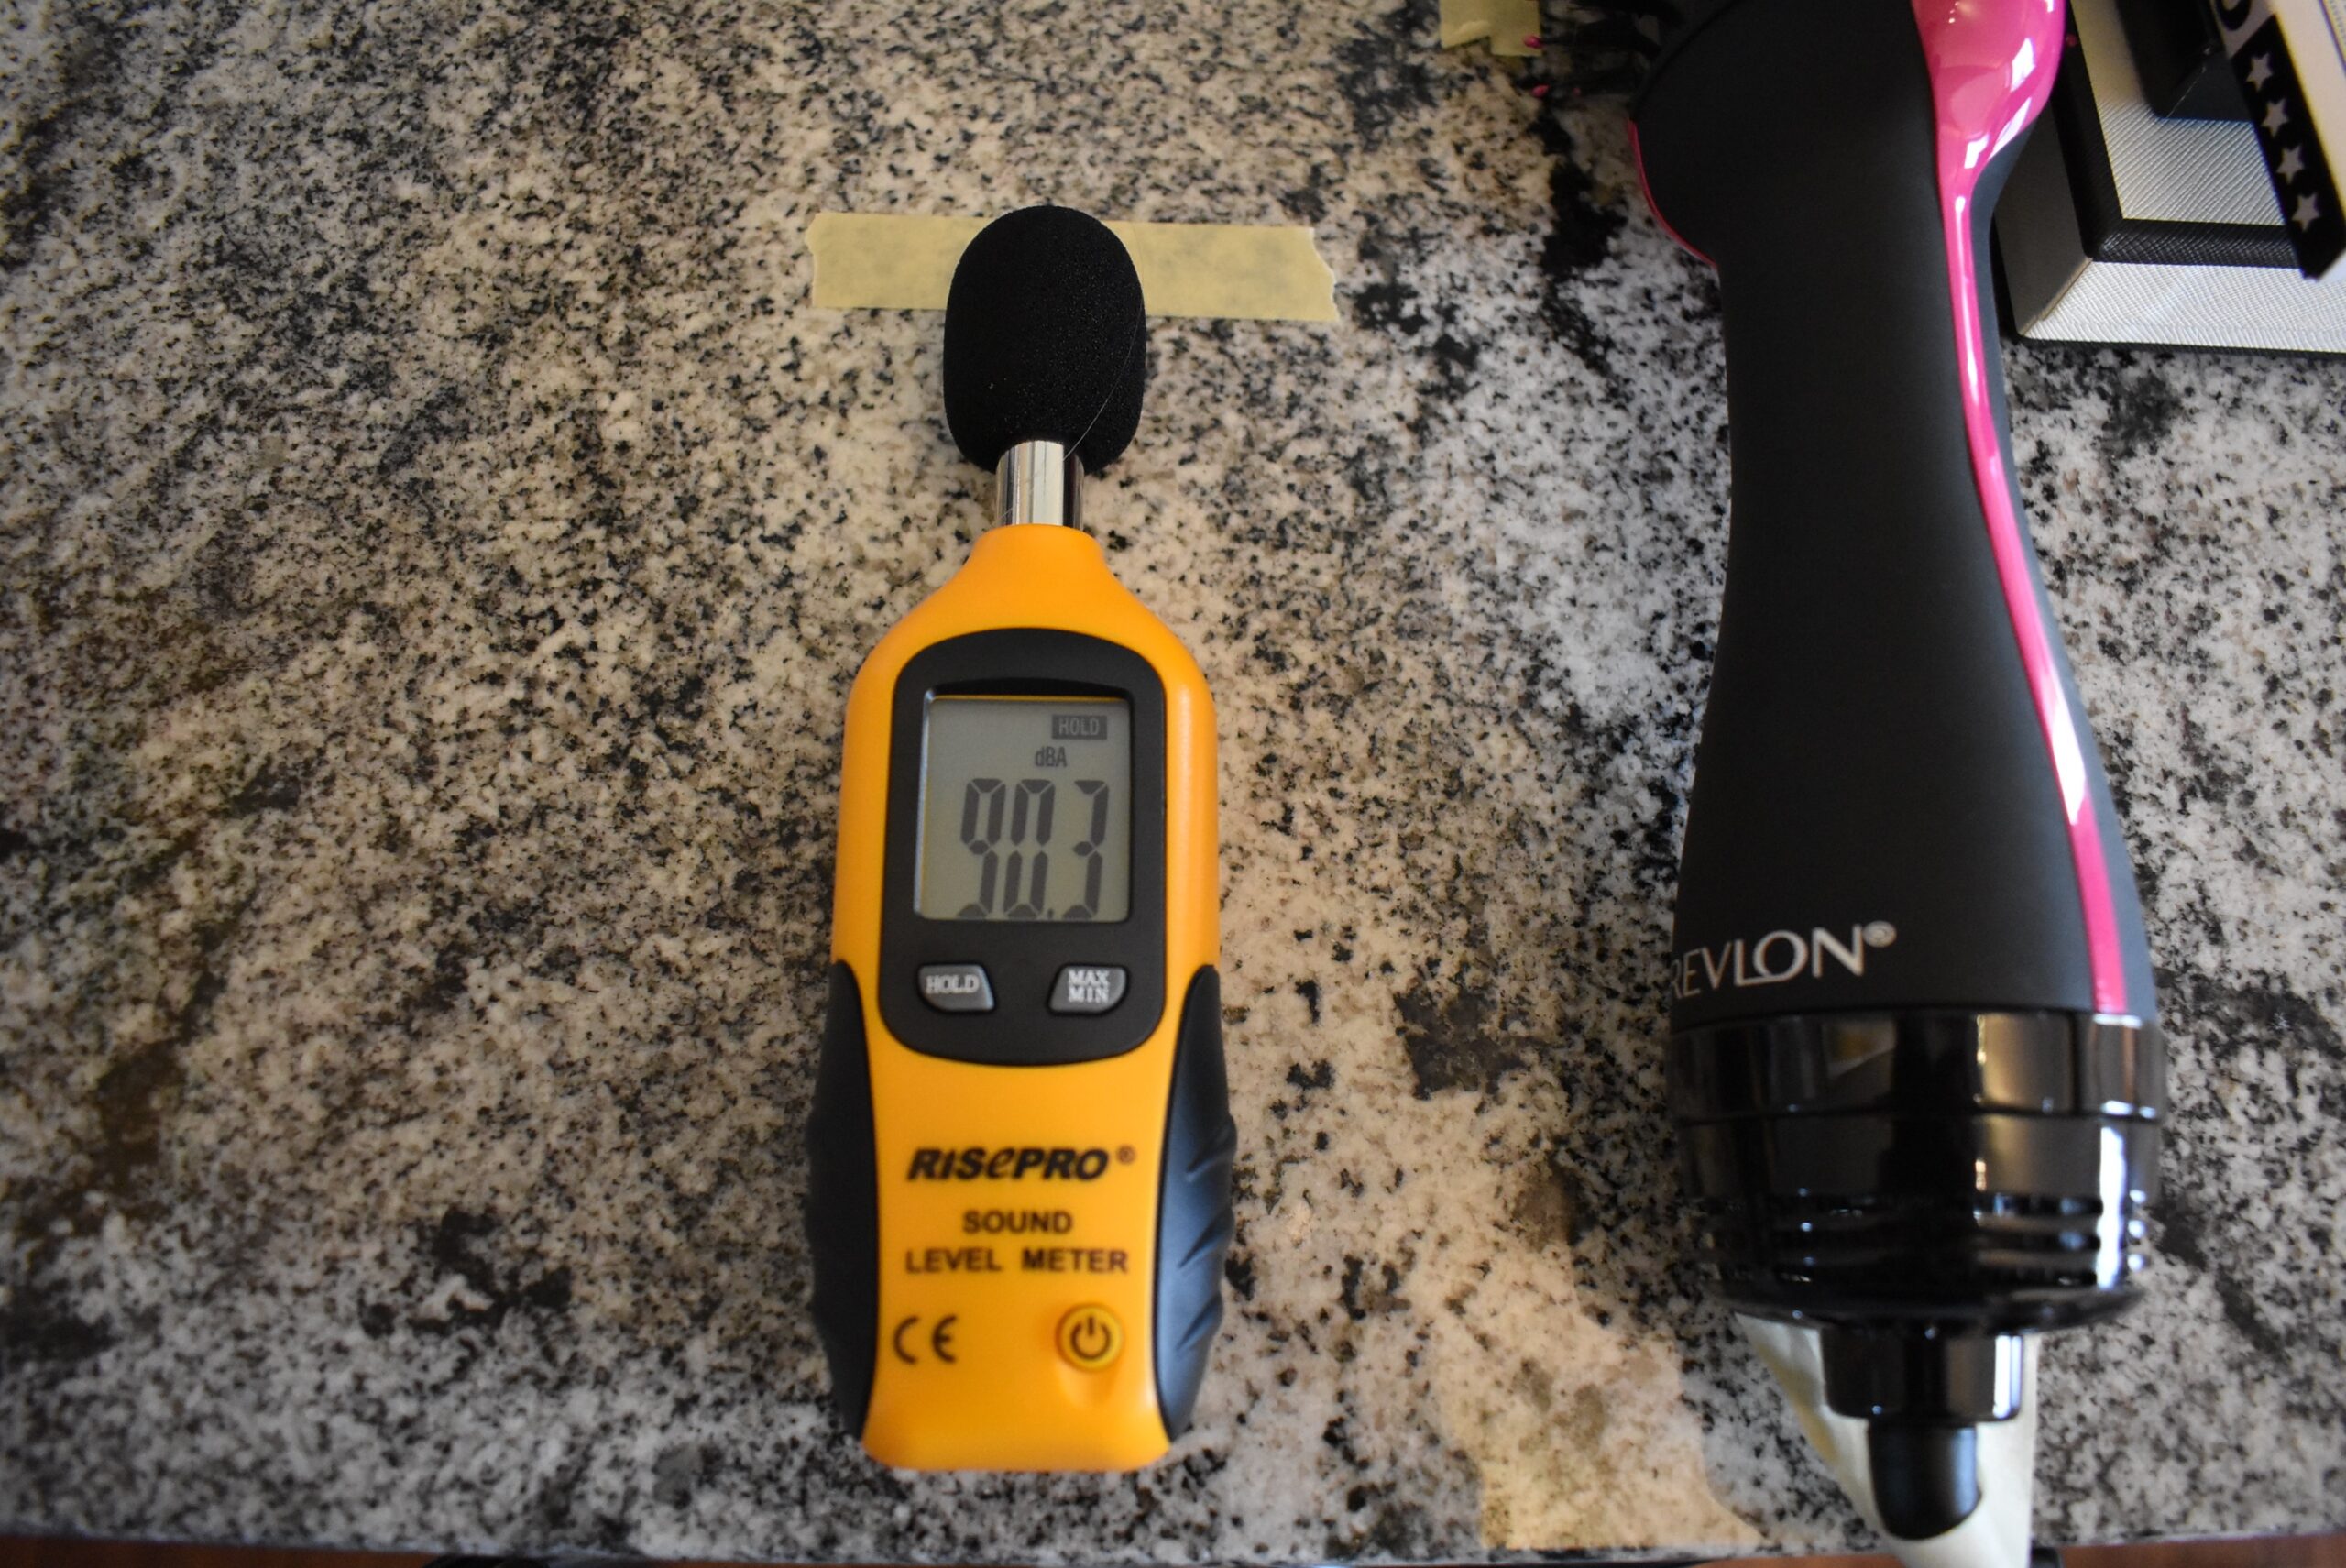 A decibel meter registering 90.3 for the Revlon hair dryer brush